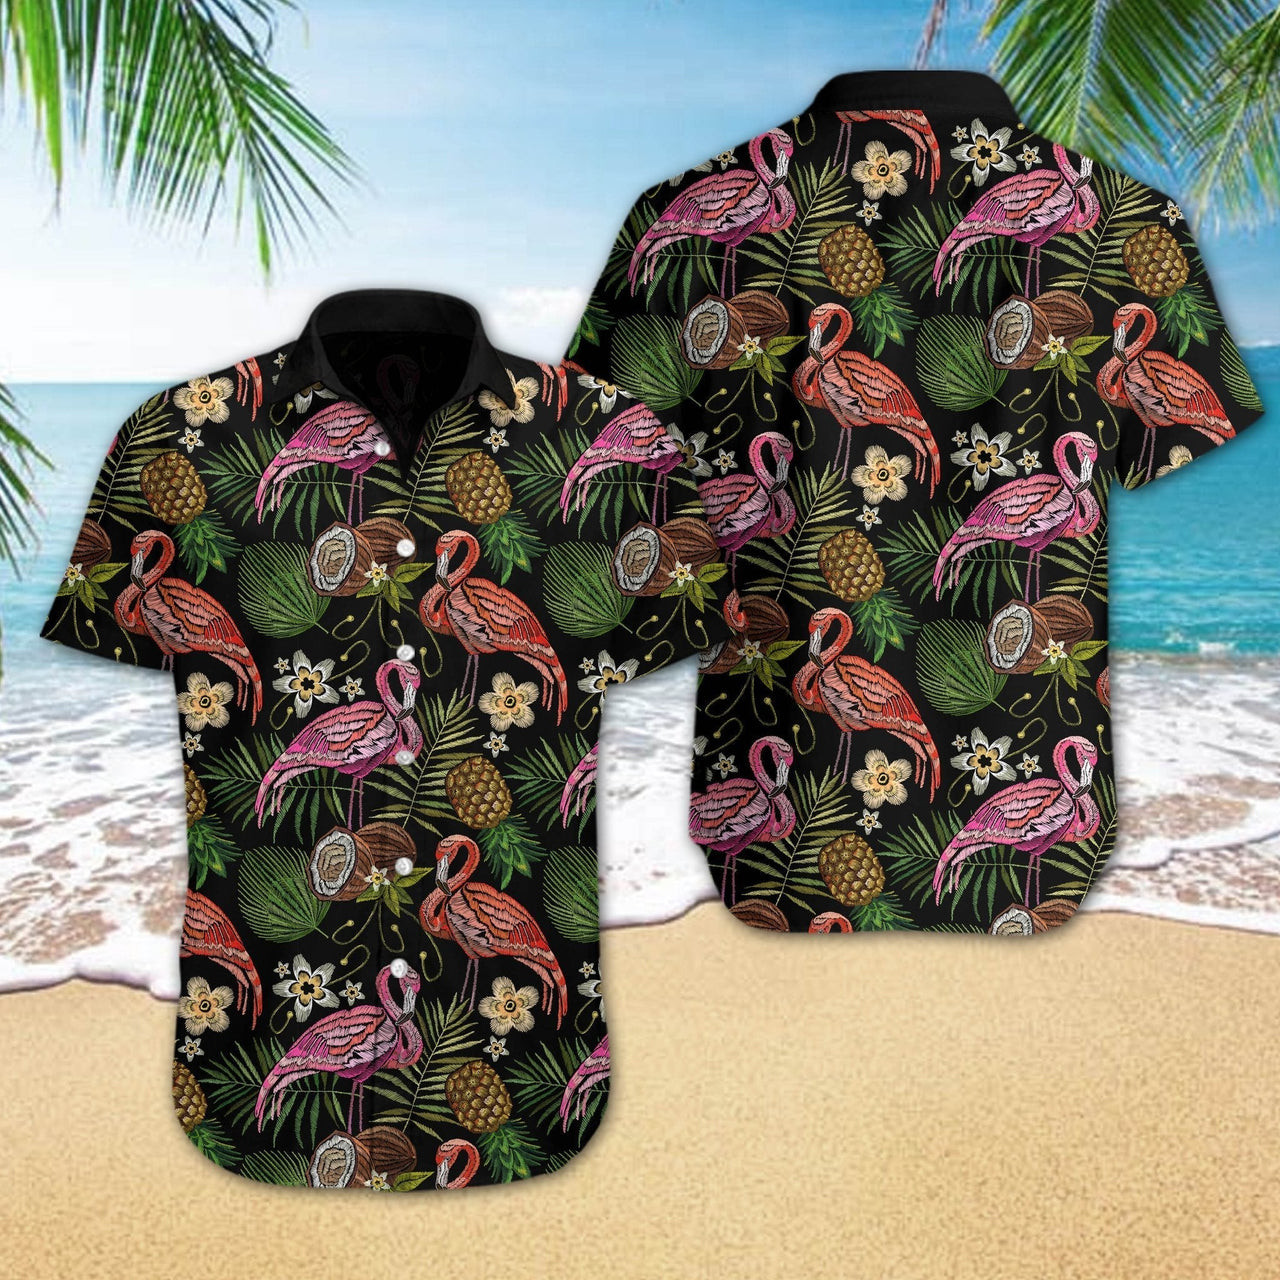 Flamingo Hawaiian Shirt Tropical Embroidery Hawaiian Shirt For Men Women